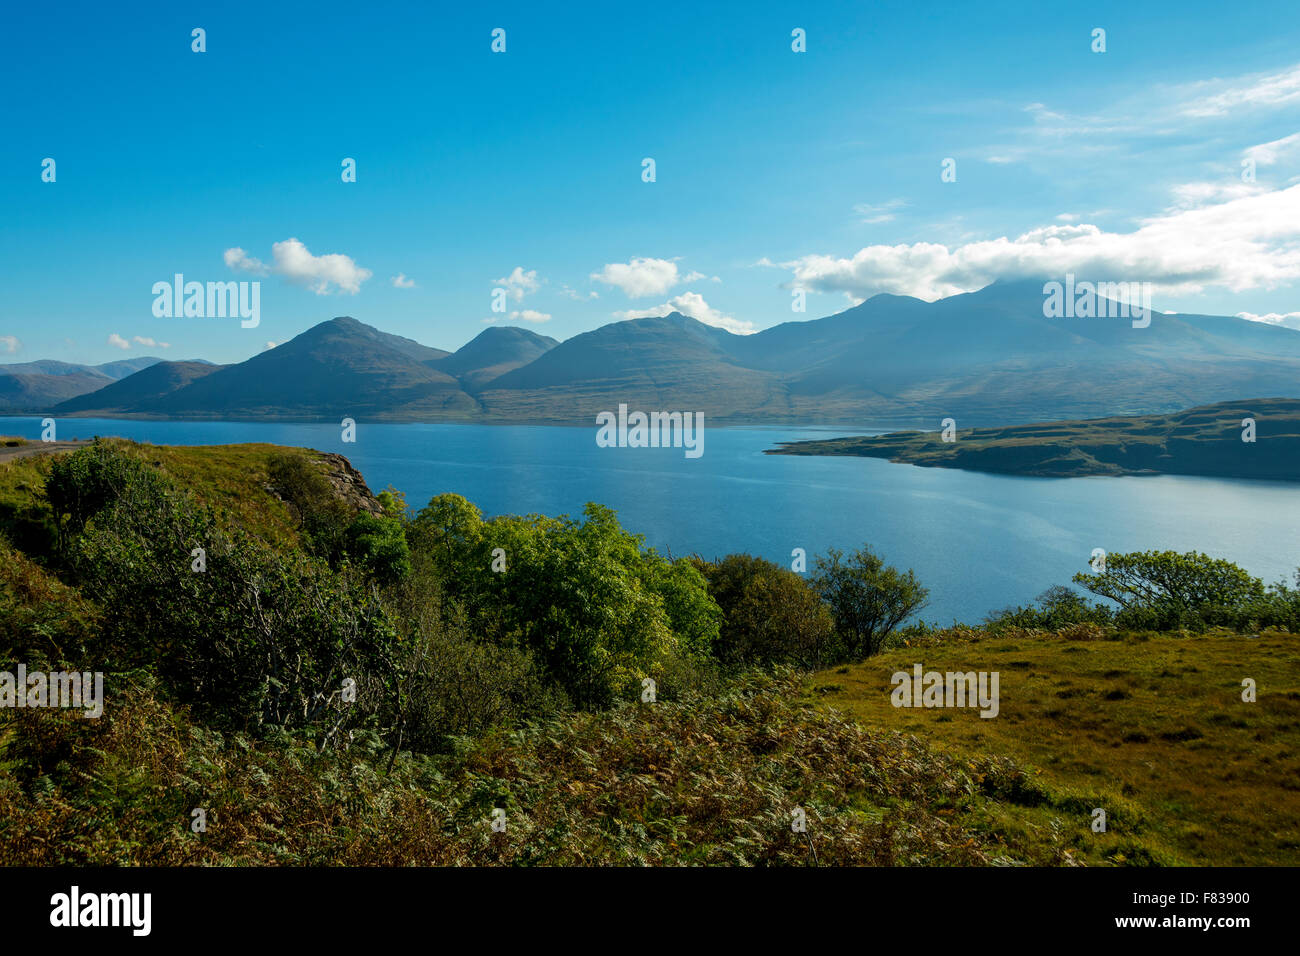 Beinn a'Ghraig, Beinn nan Gabhar, Beinn Fhada, A' Chioch and Ben More (on right) over Loch na Keal, Isle of Mull, Scotland, UK Stock Photo